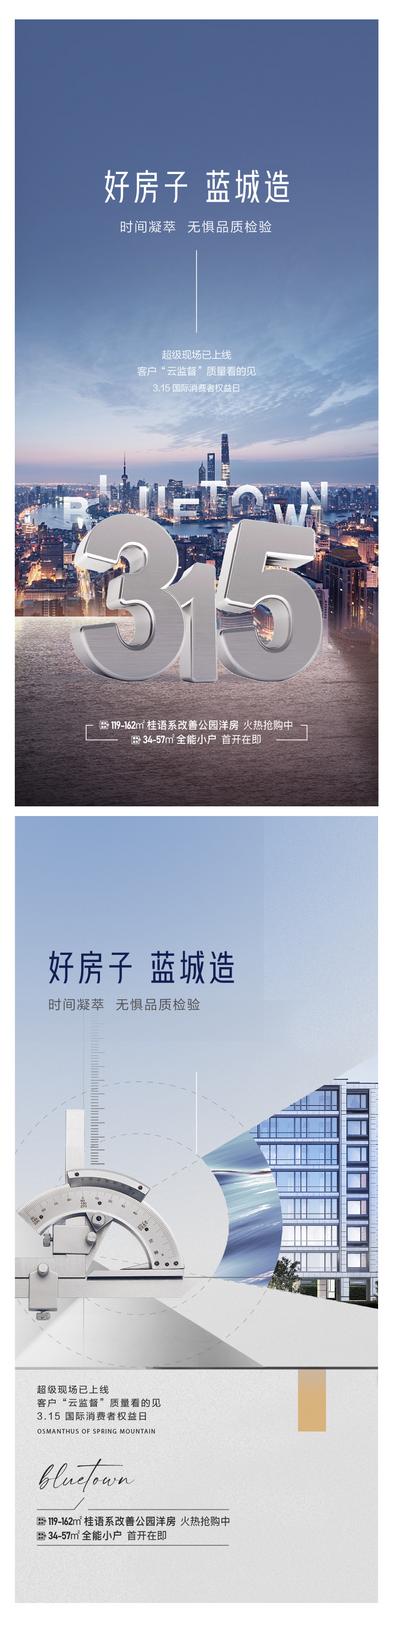 南门网 广告 海报 地产 315 消费者 权益日 品质 品牌 楼房